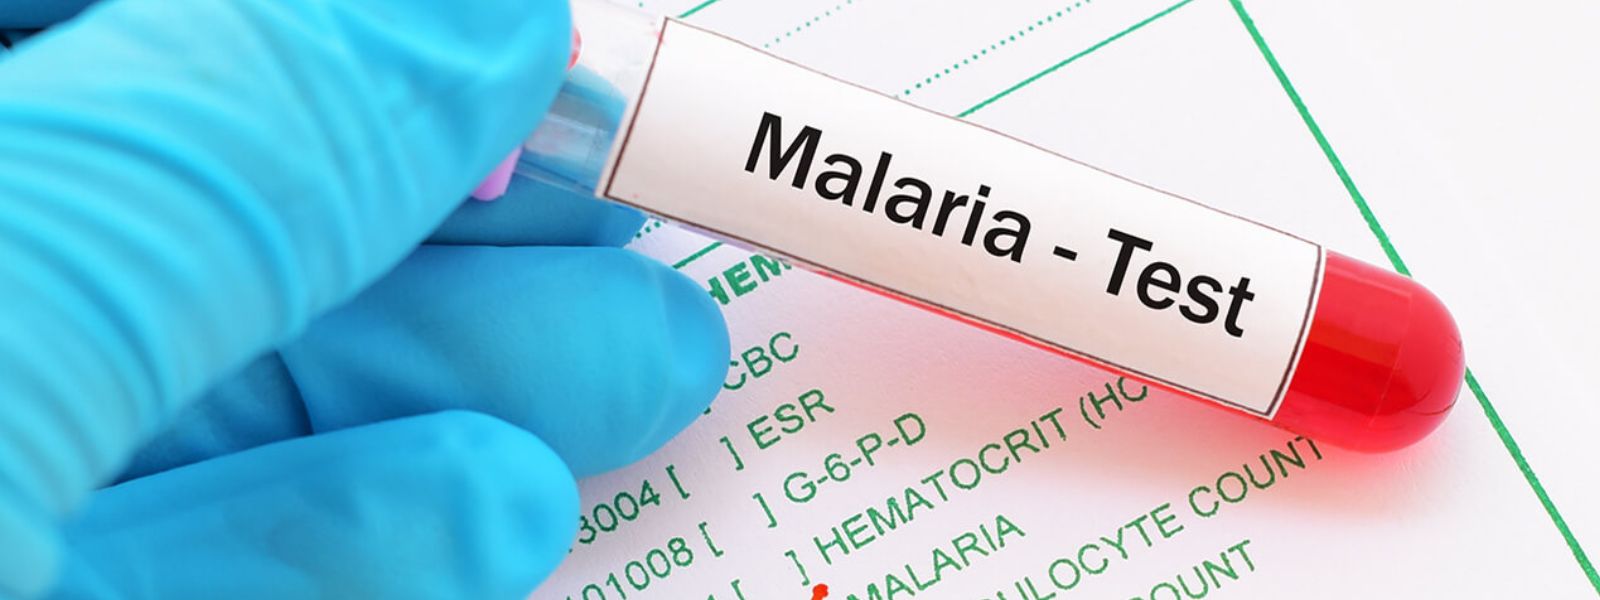 Malaria in Sri Lanka